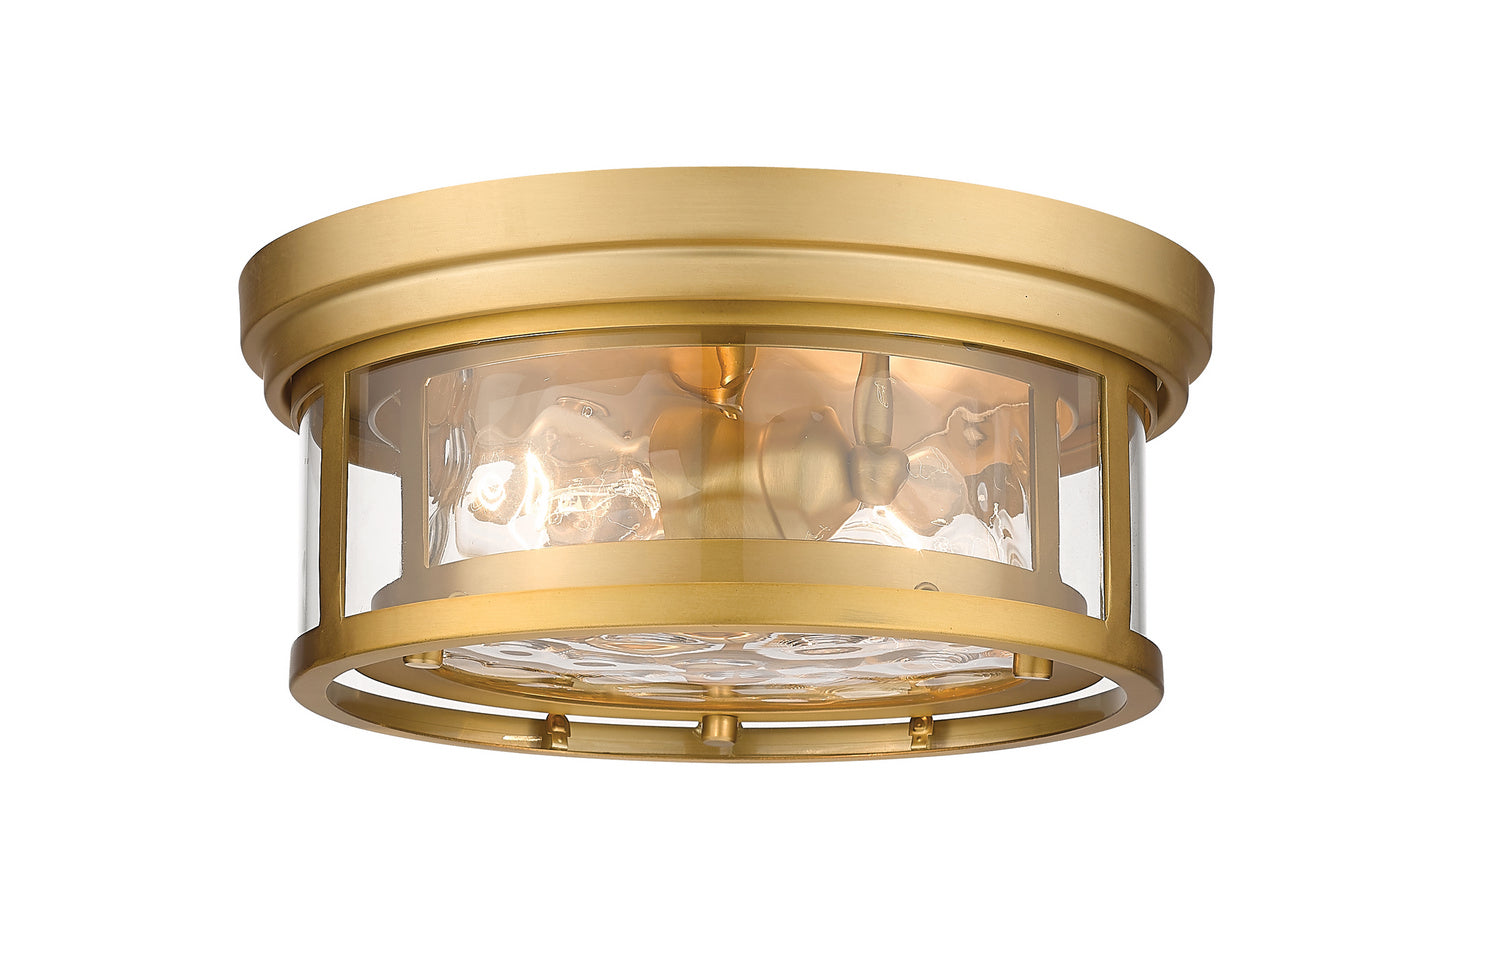 Z-Lite Clarion 493F2-OBR Ceiling Light - Olde Brass